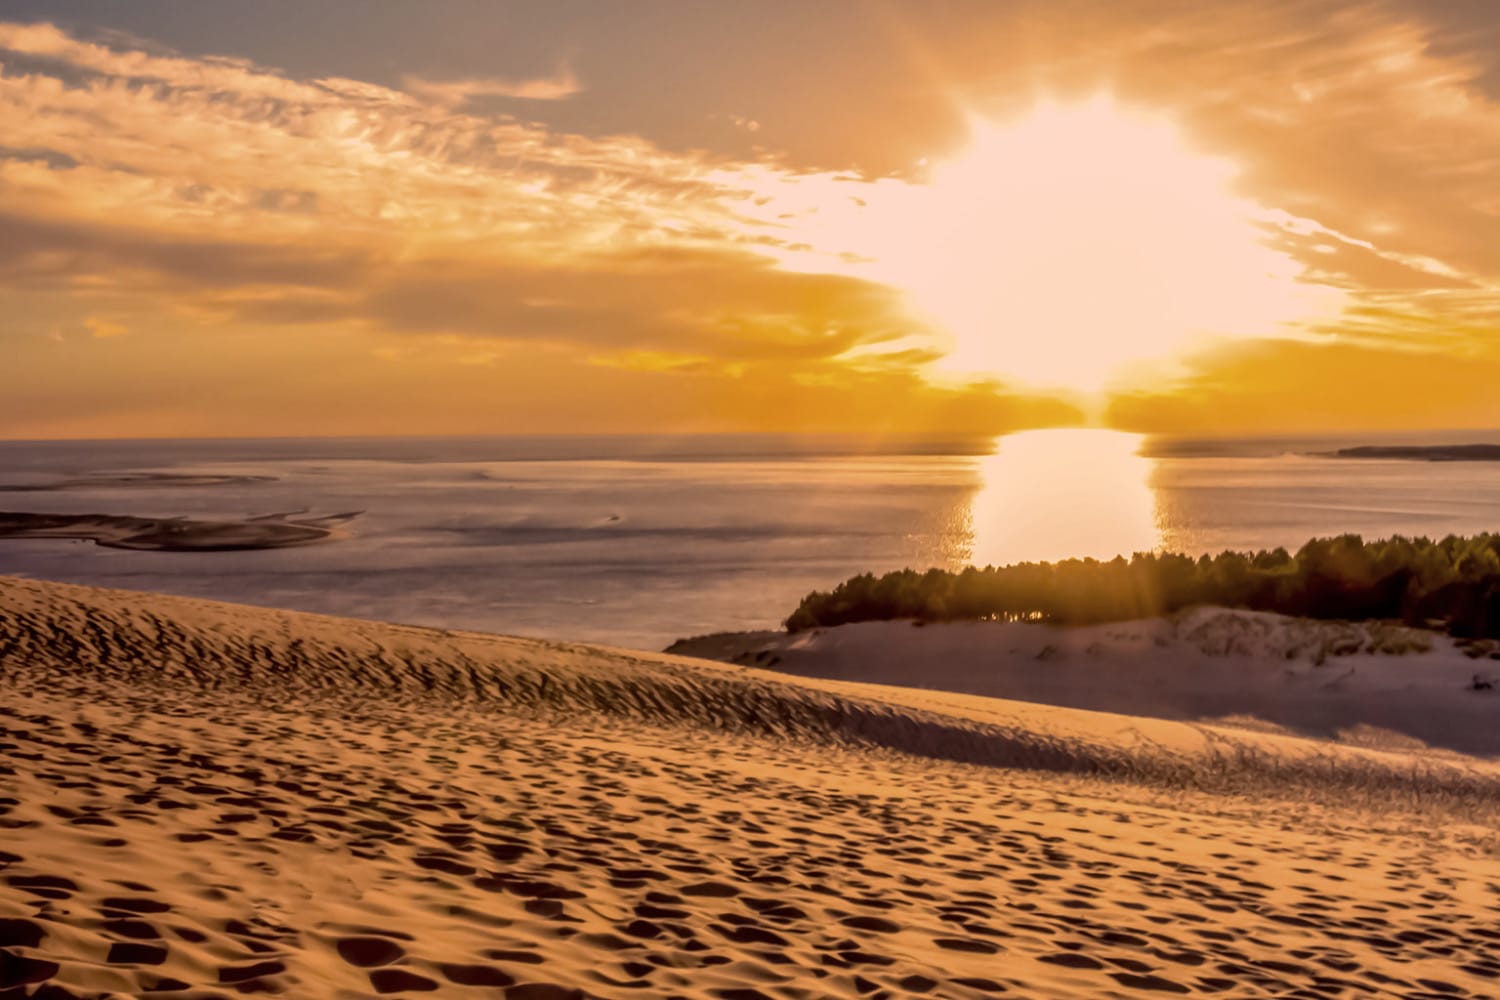 Des sculptures de sable uniques capturées sur la Dune du Pilat par le spécialiste de la météo Florian Clément